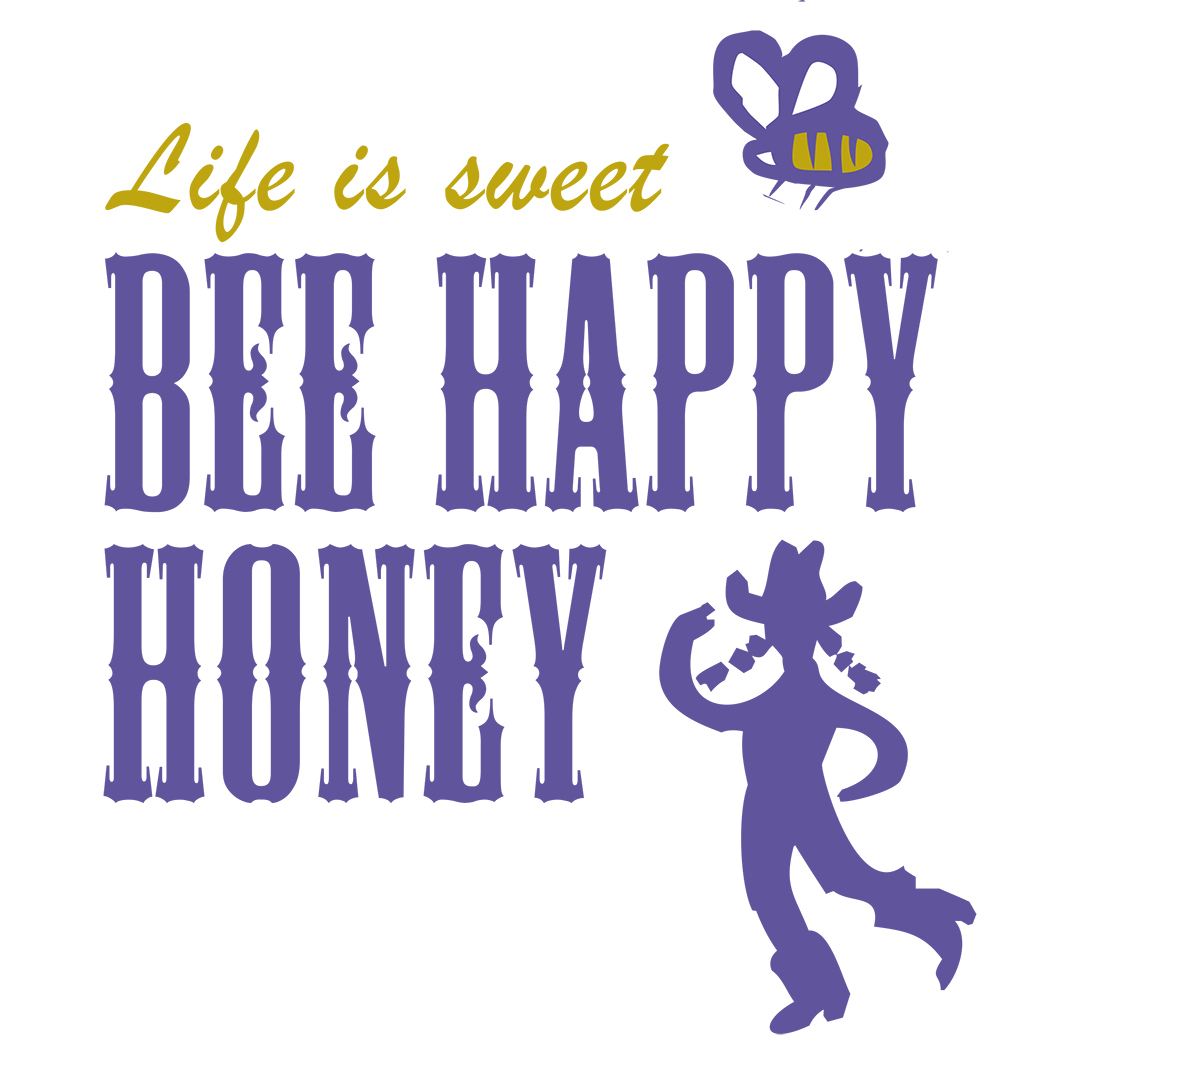 Bee Happy Honey